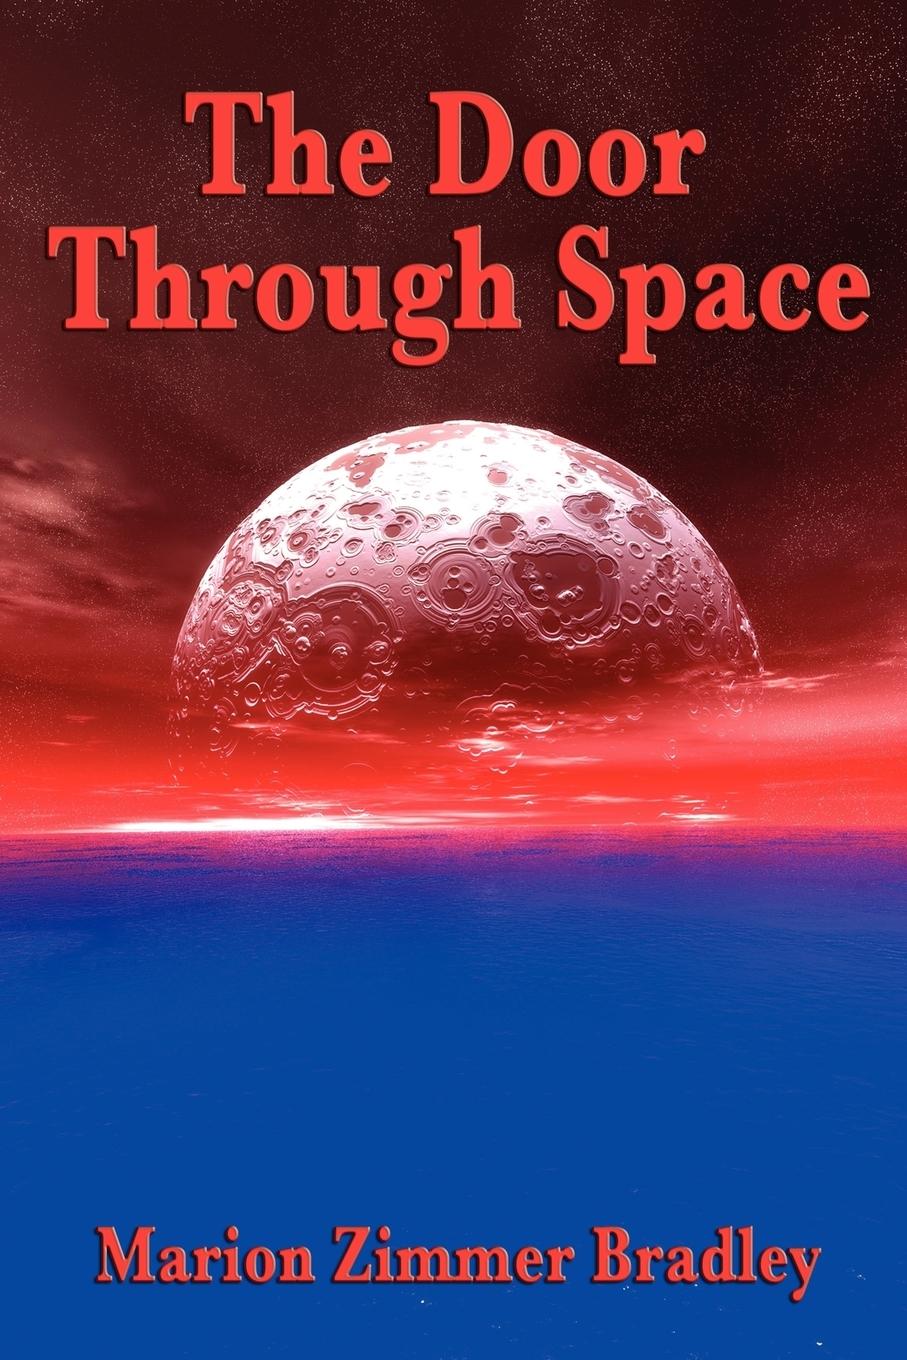 The Door Through Space - Bradley, Marion Zimmer|Marion Zimmer Bradley, Zimmer Bradley|Marion Zimmer Bradley